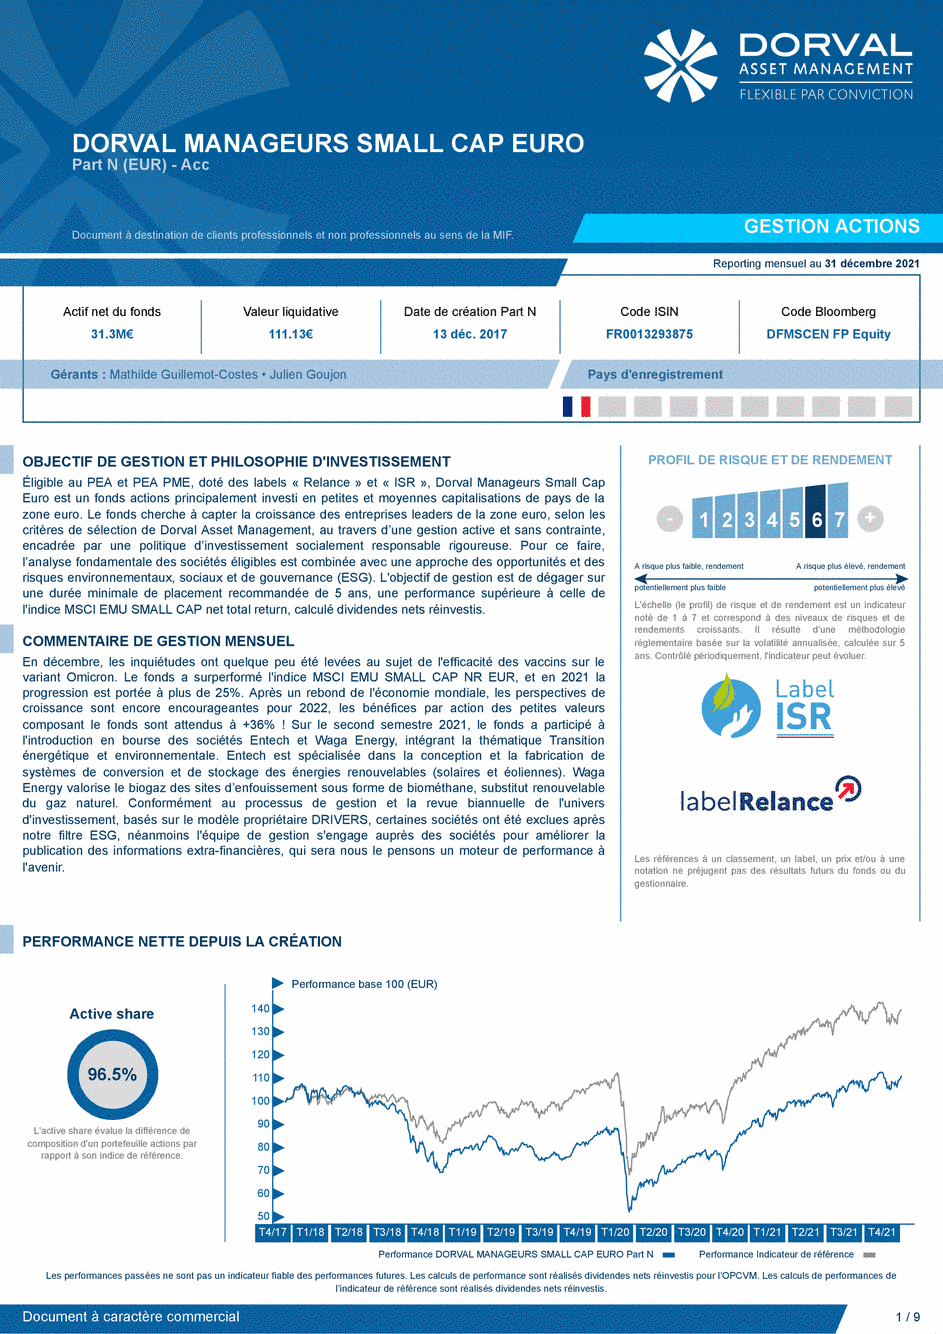 Reporting DORVAL MANAGEURS SMALL CAP EURO N - 31/12/2021 - Français